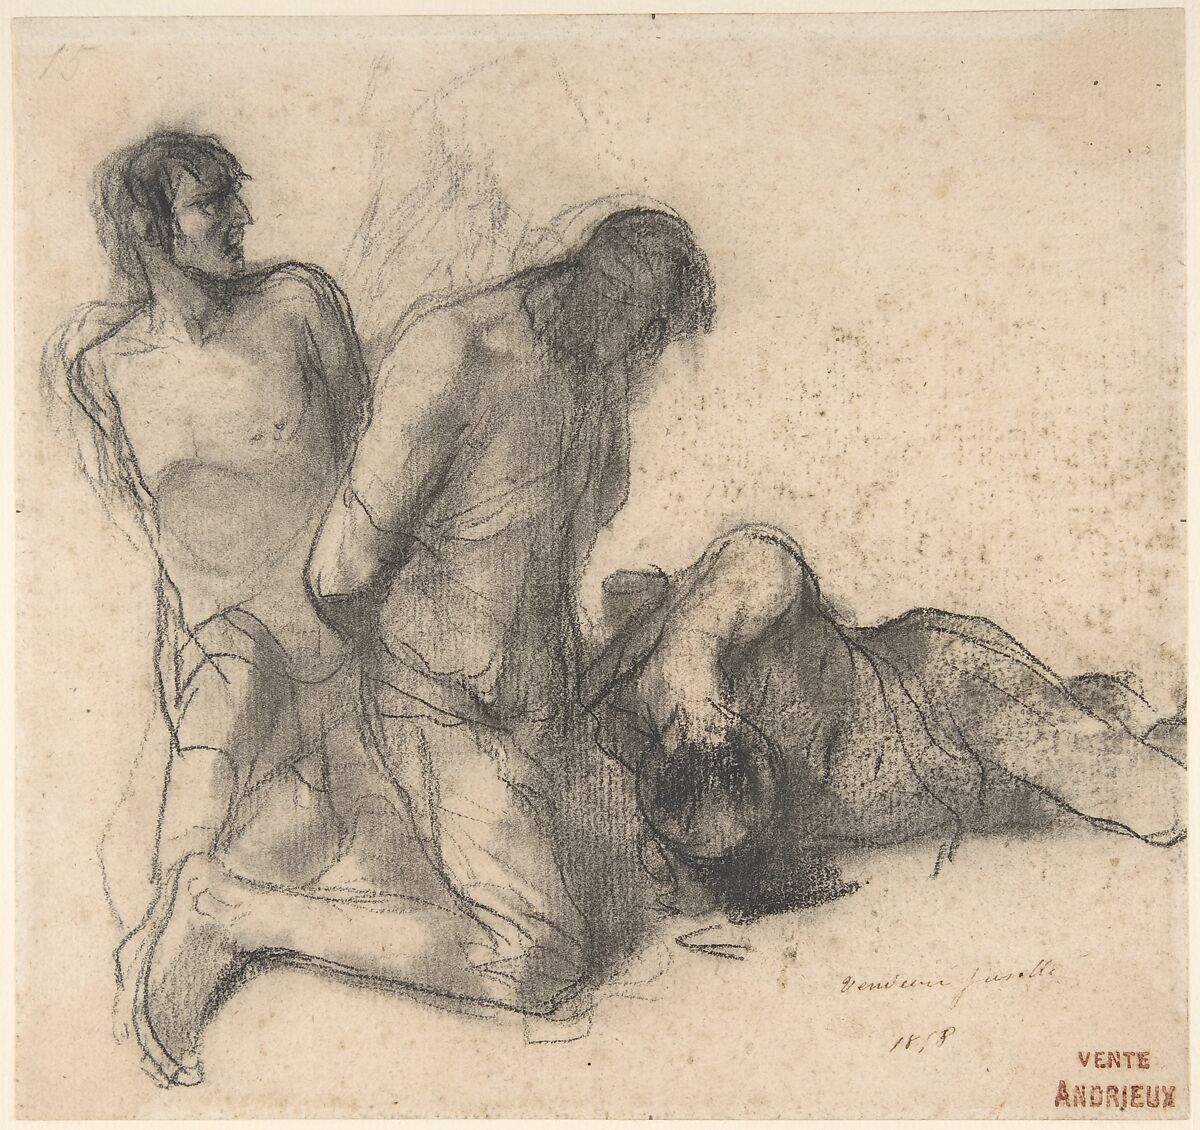 Vendéan Fusillé, Clement-August Andrieux (French, Paris 1829–1880 Fontainebleau), Black chalk and stumping 